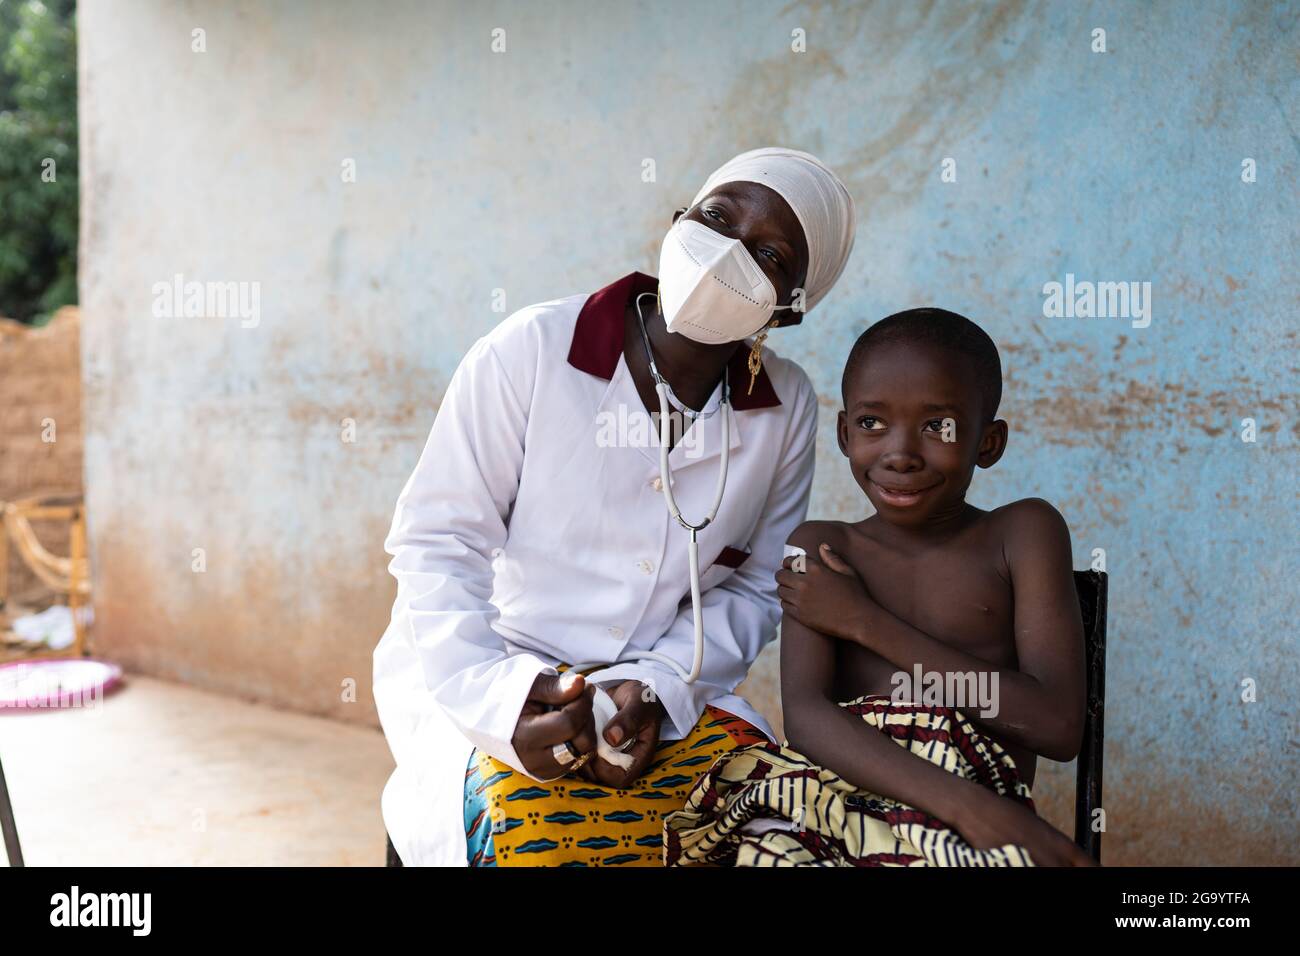 Infirmière noire avec masque facial et stéthoscope et petit enfant africain sans chirerie assis à côté d'elle à l'extérieur d'un petit dispensaire de village africain, les deux s Banque D'Images